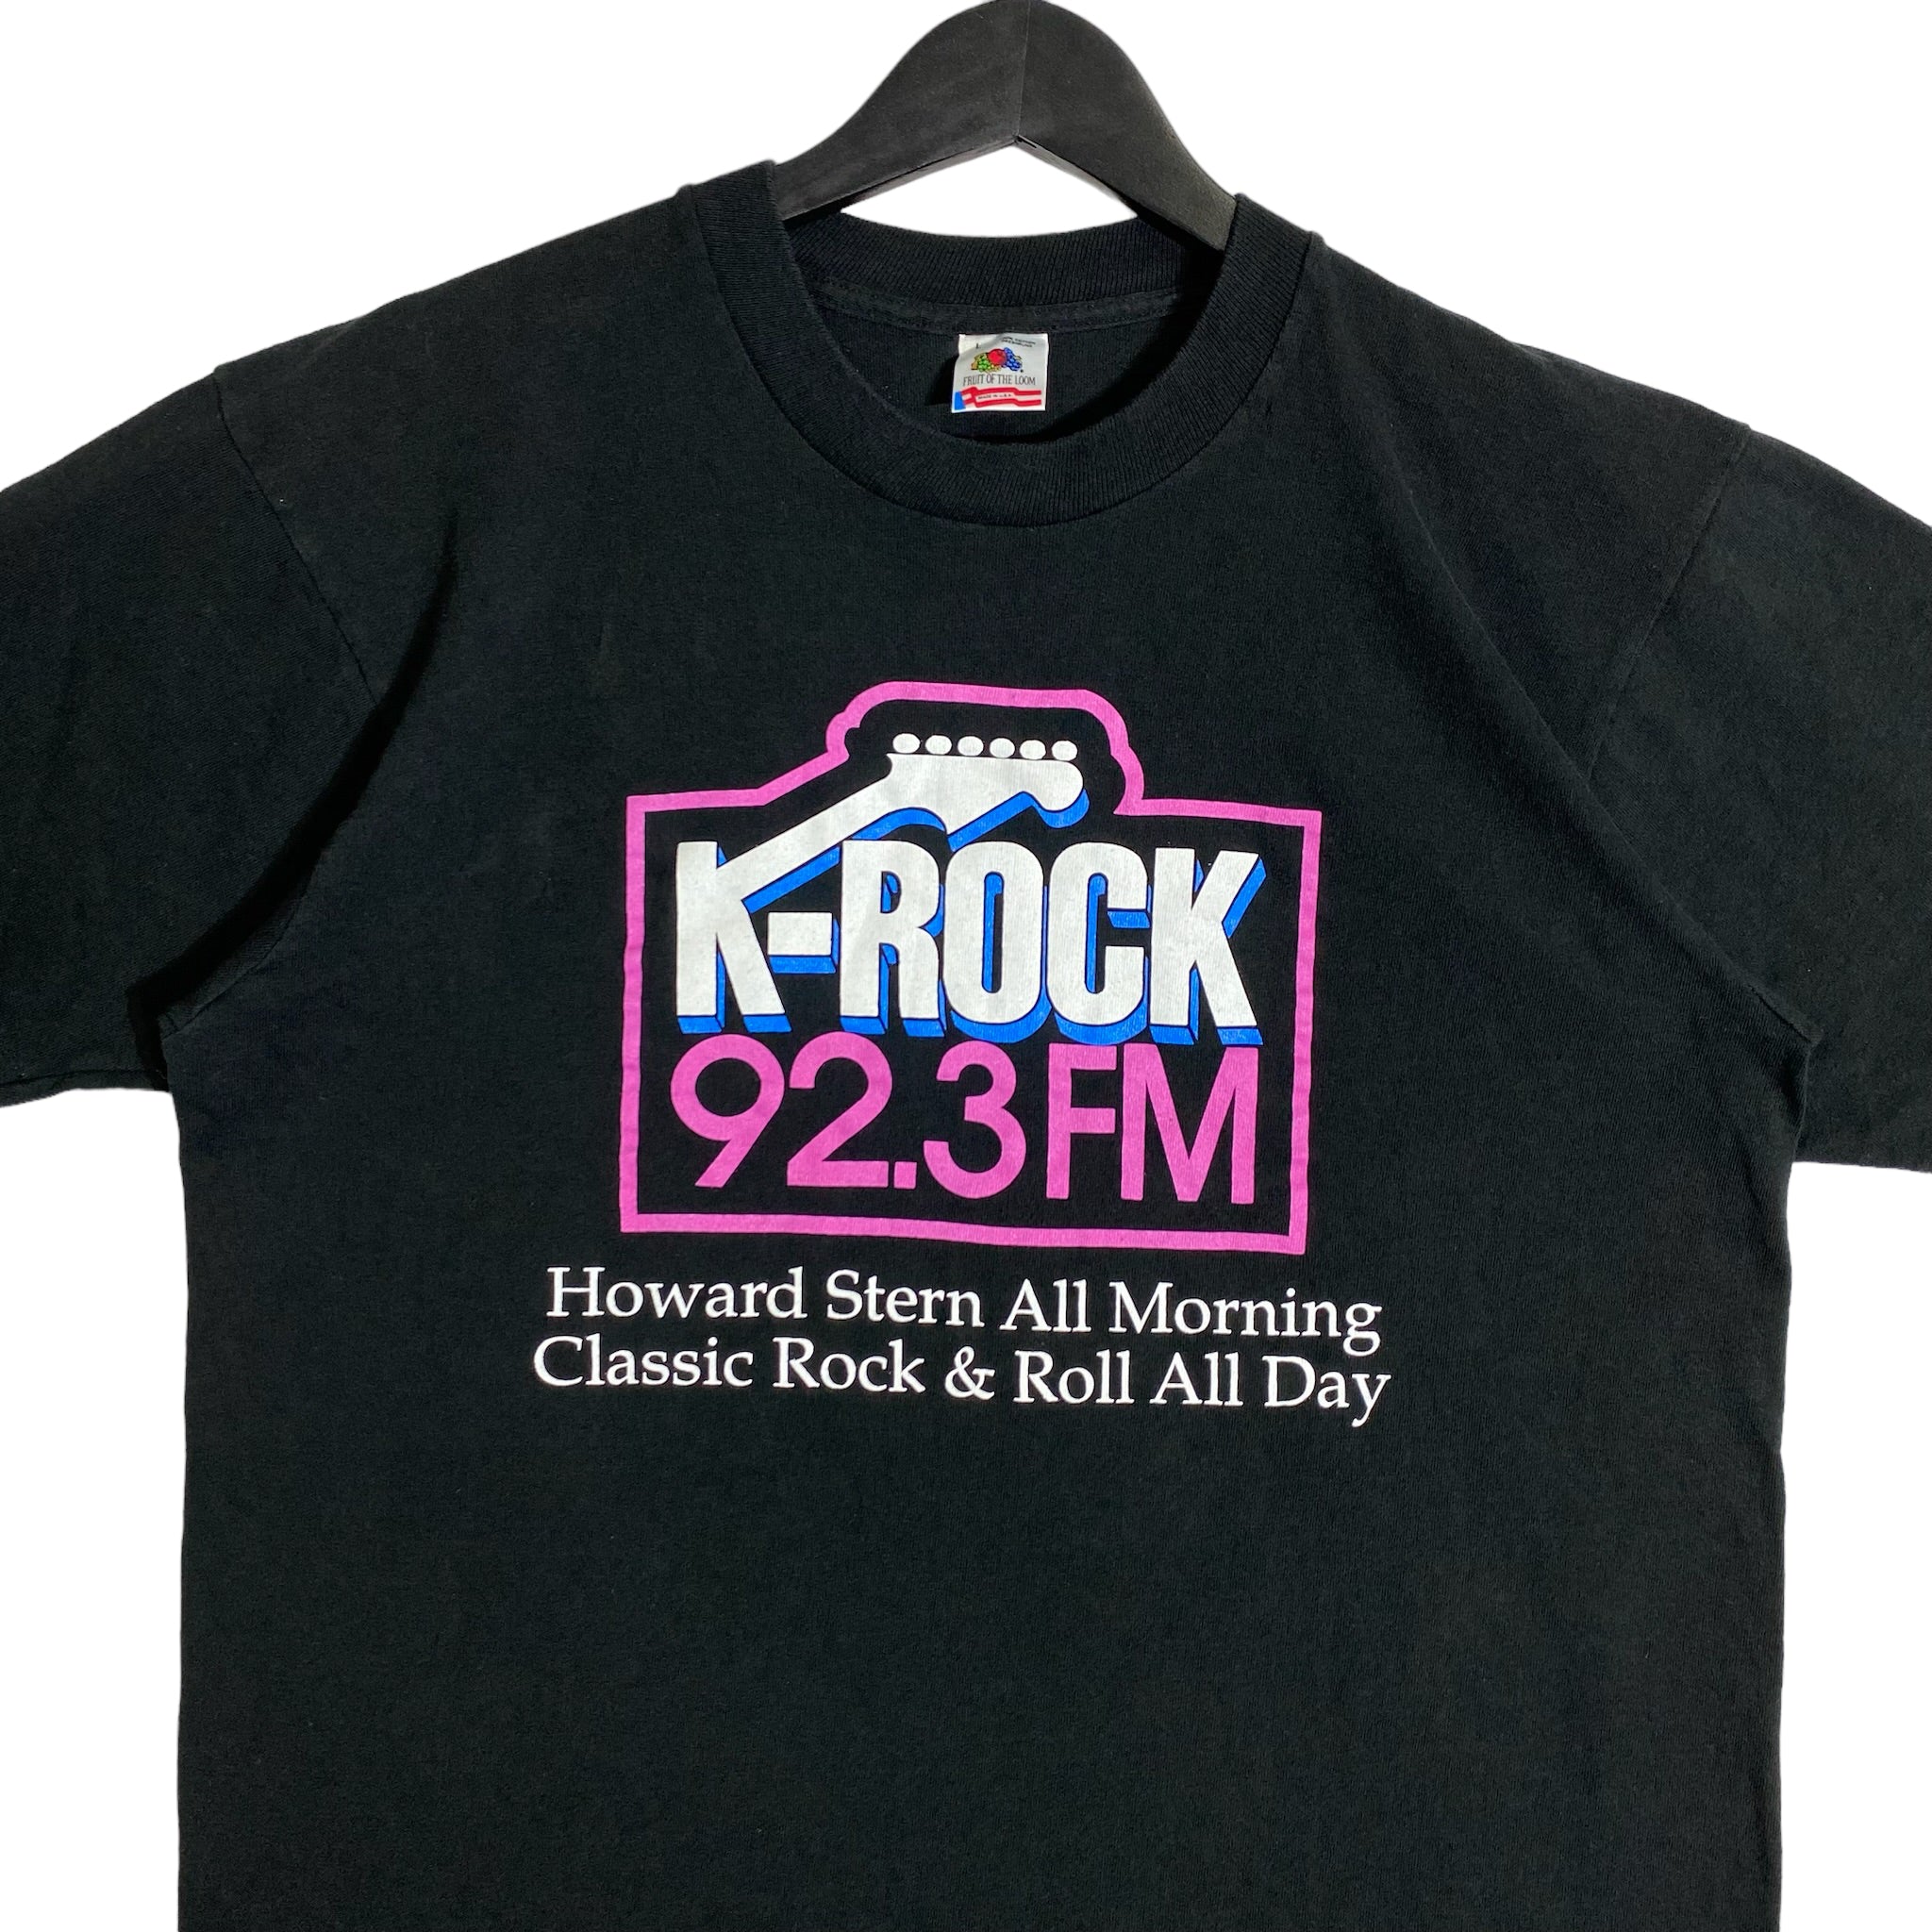 Vintage Howard Stern K-Rock 92.3 FM Radio Tee